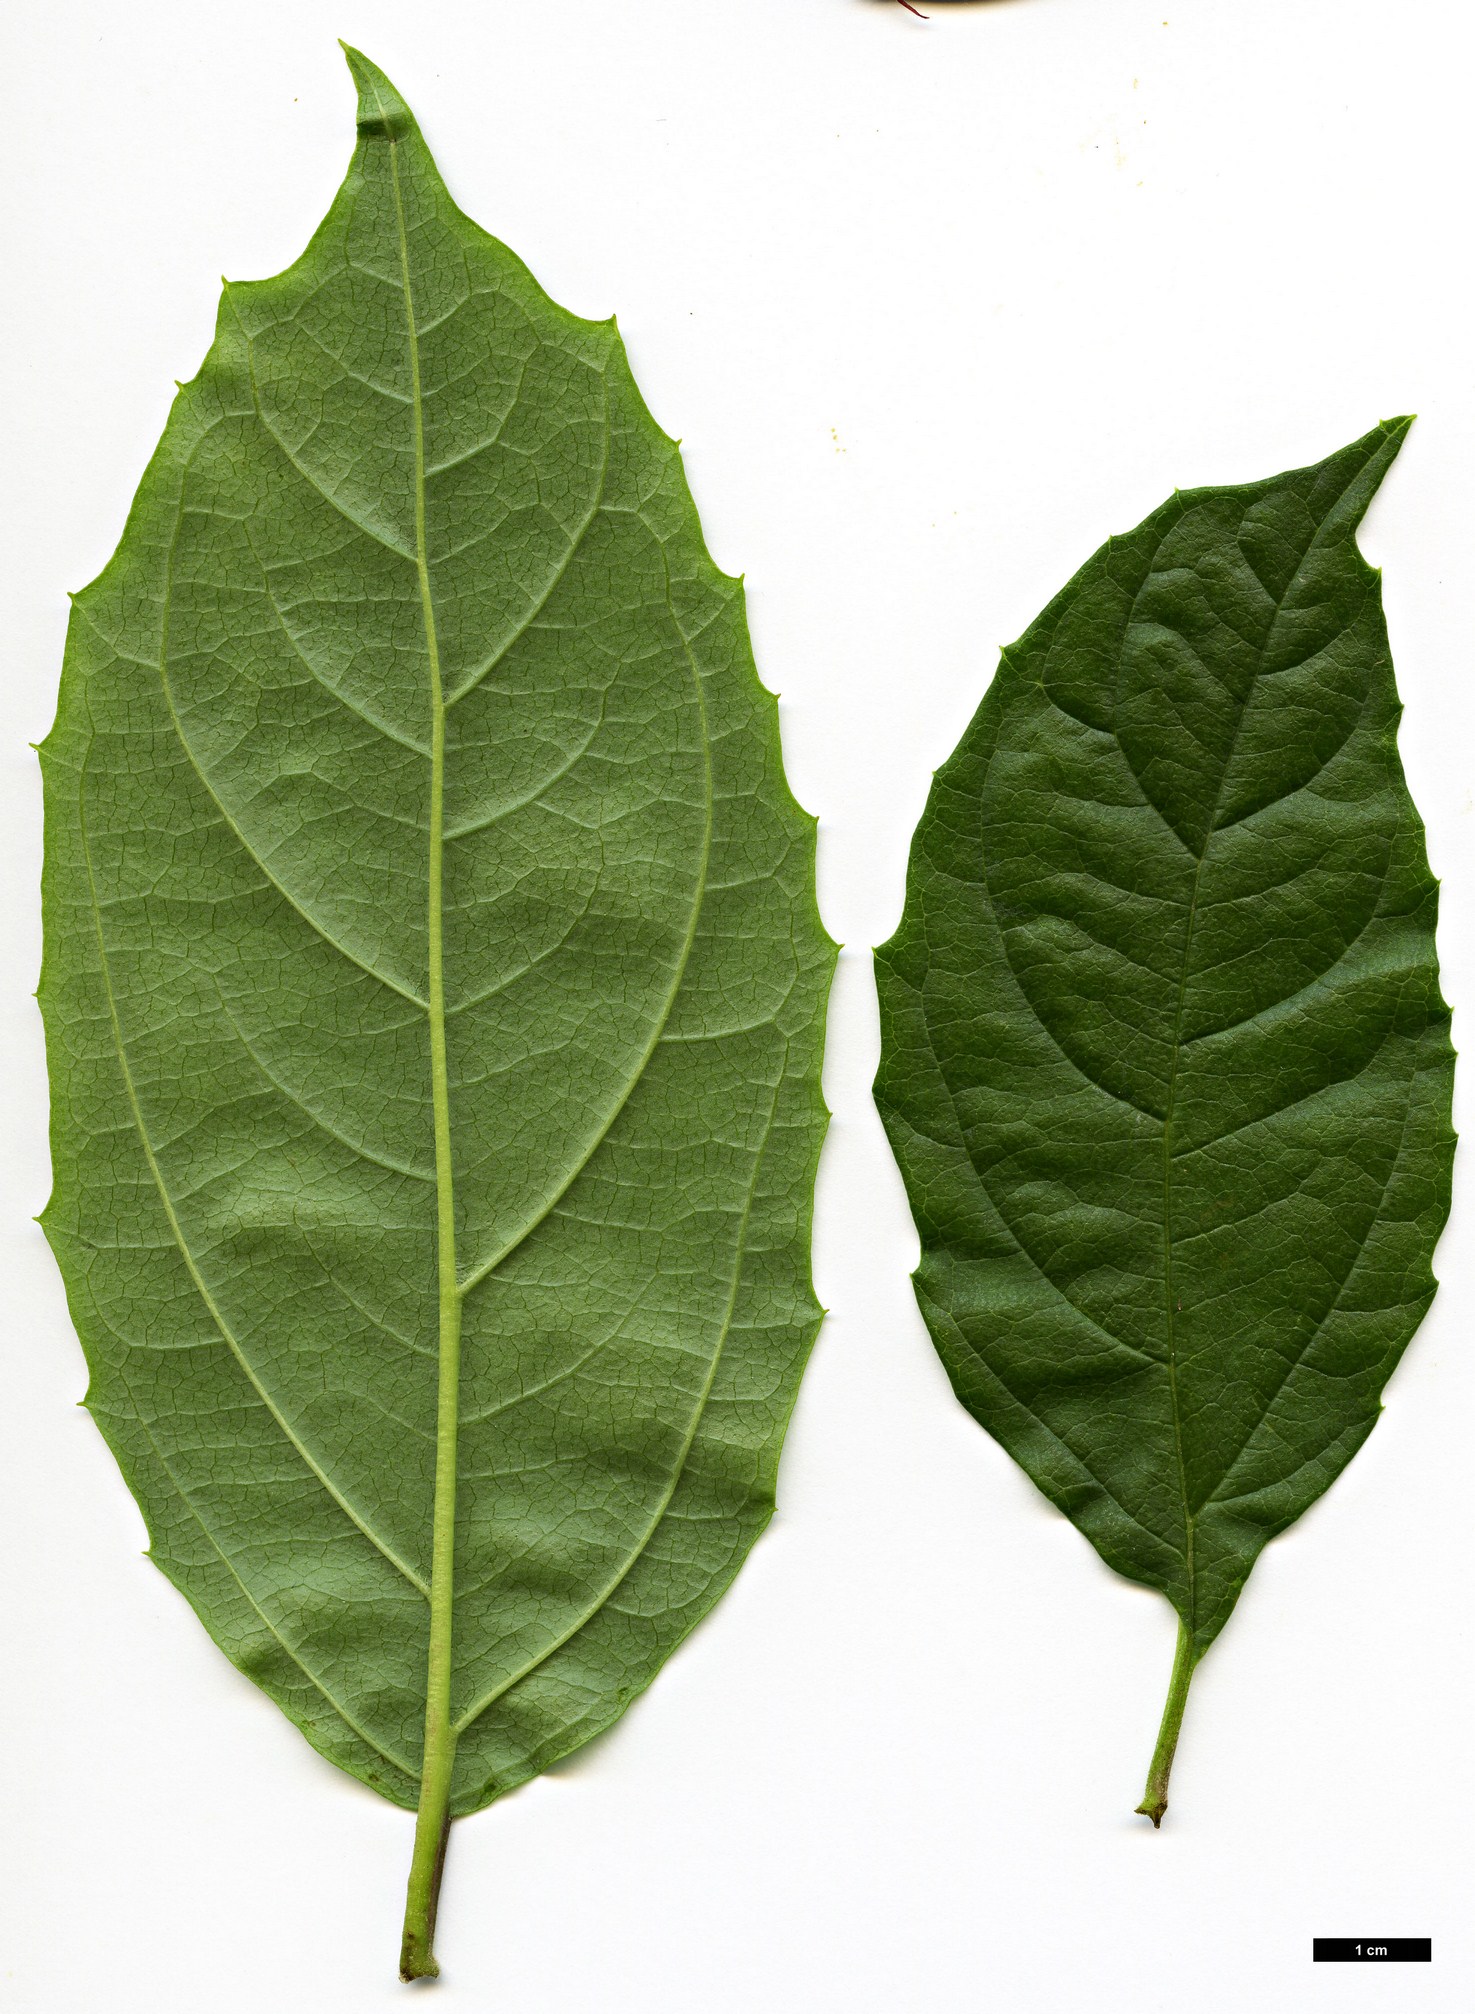 High resolution image: Family: Adoxaceae - Genus: Viburnum - Taxon: coriaceum